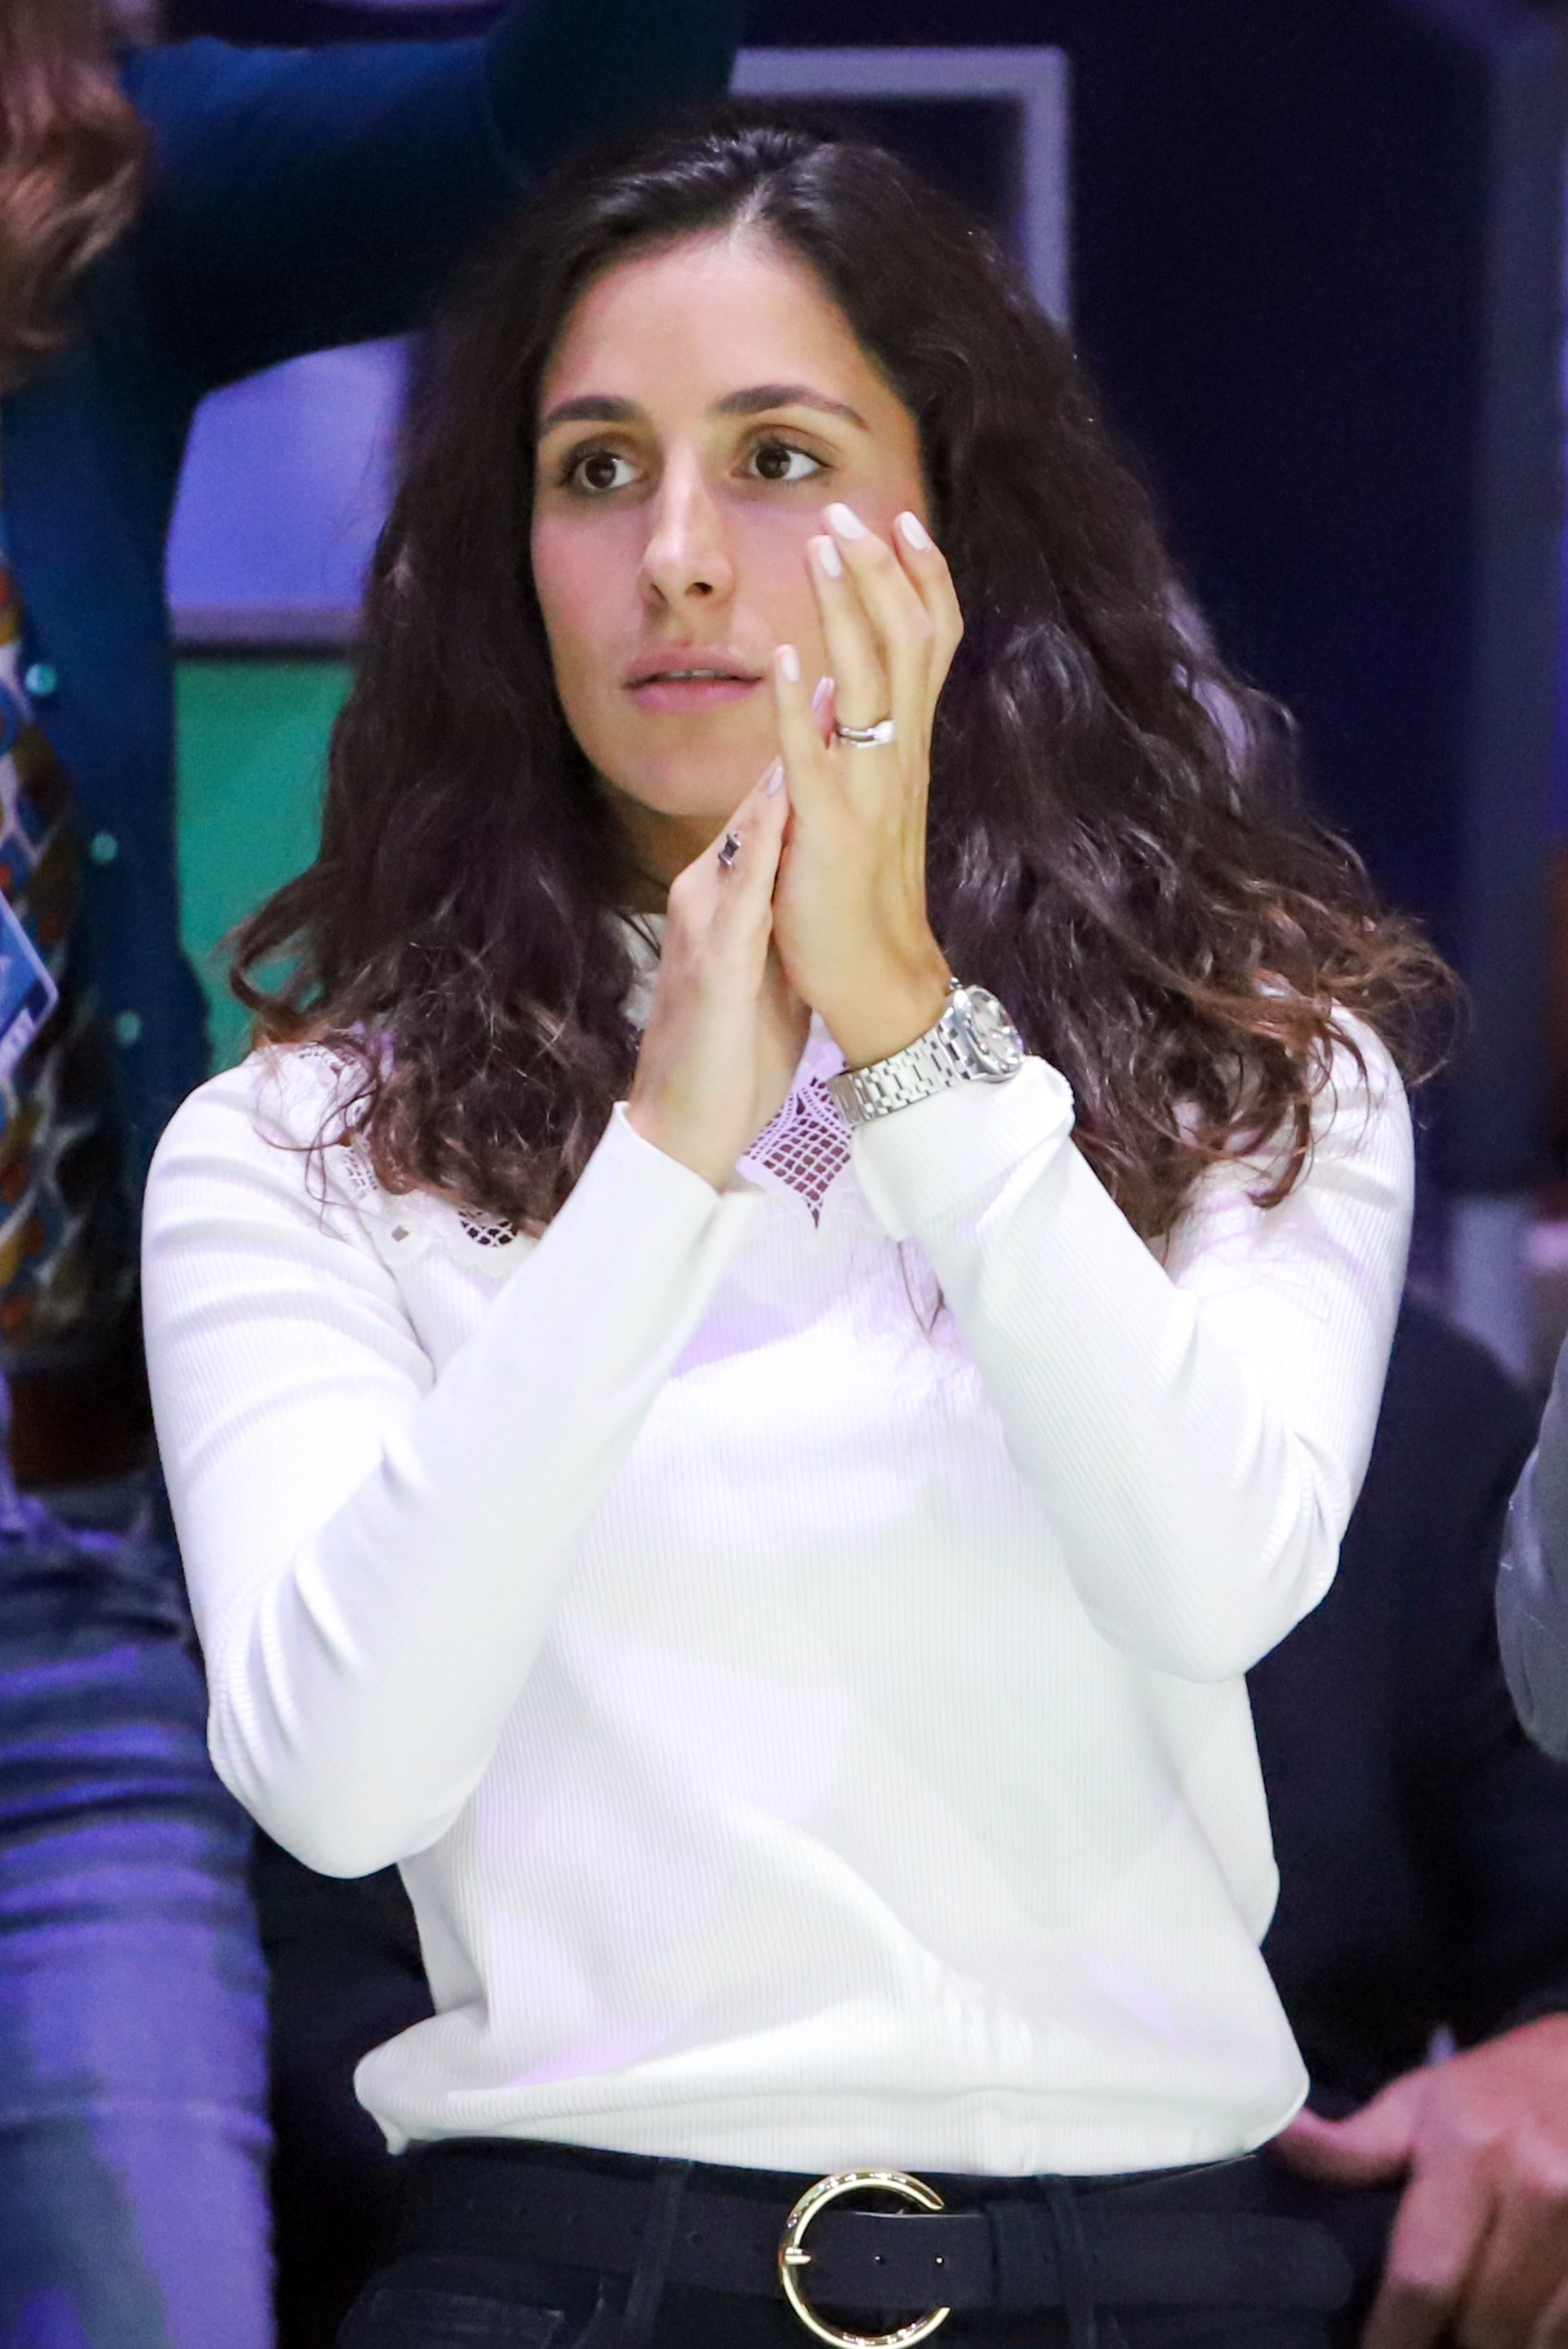 Xisca o Mery Perelló, la mujer de Nadal, animándole en la Copa Davis